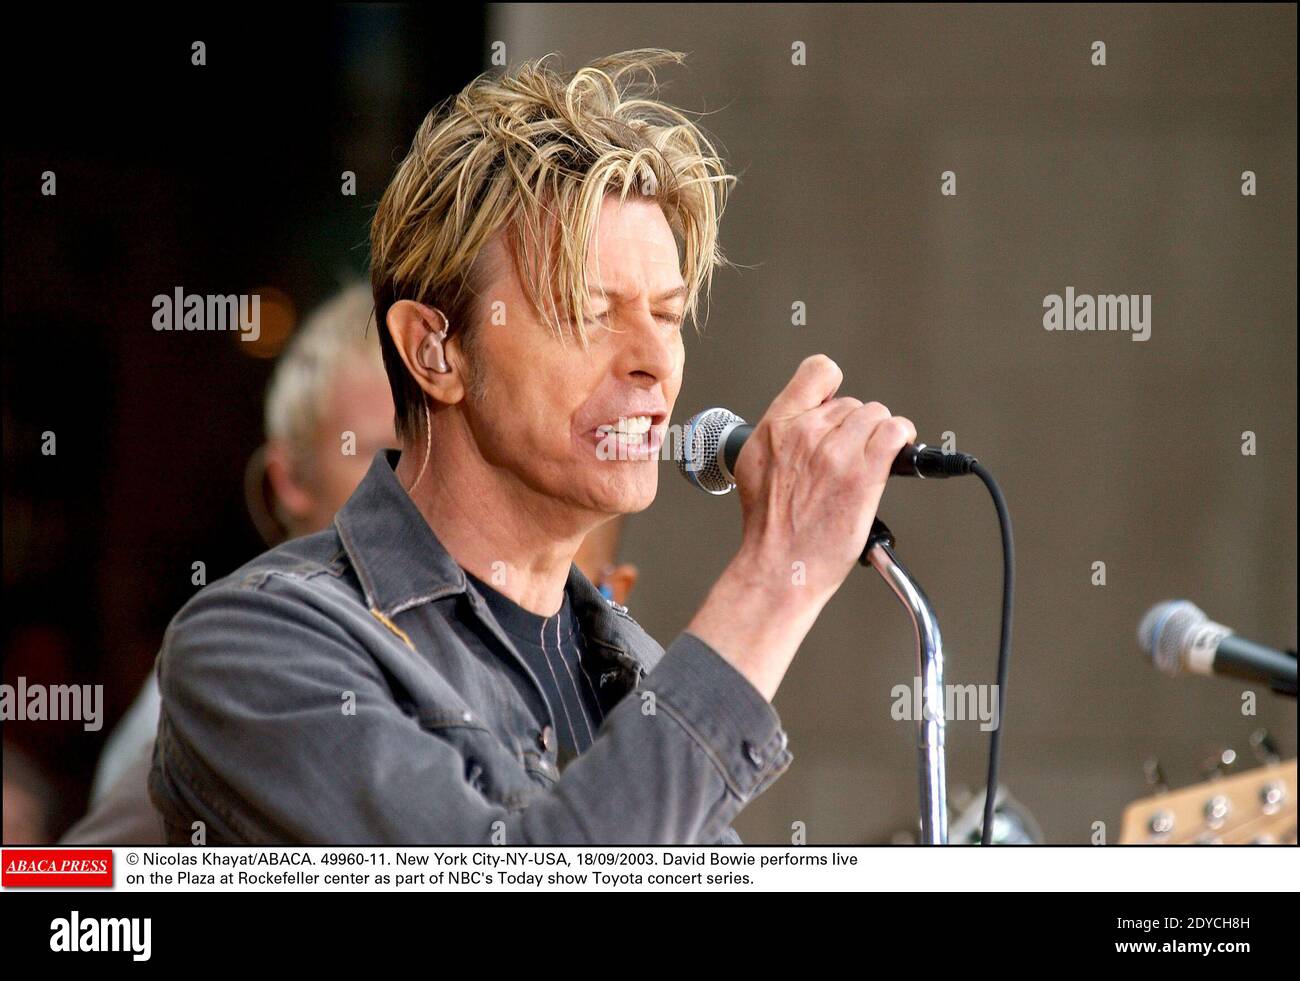 La veterana estrella de la música David Bowie ha roto años de silencio y  especulación para lanzar su primer single y álbum en una década. El  cantante de glam-rock, que disparó a